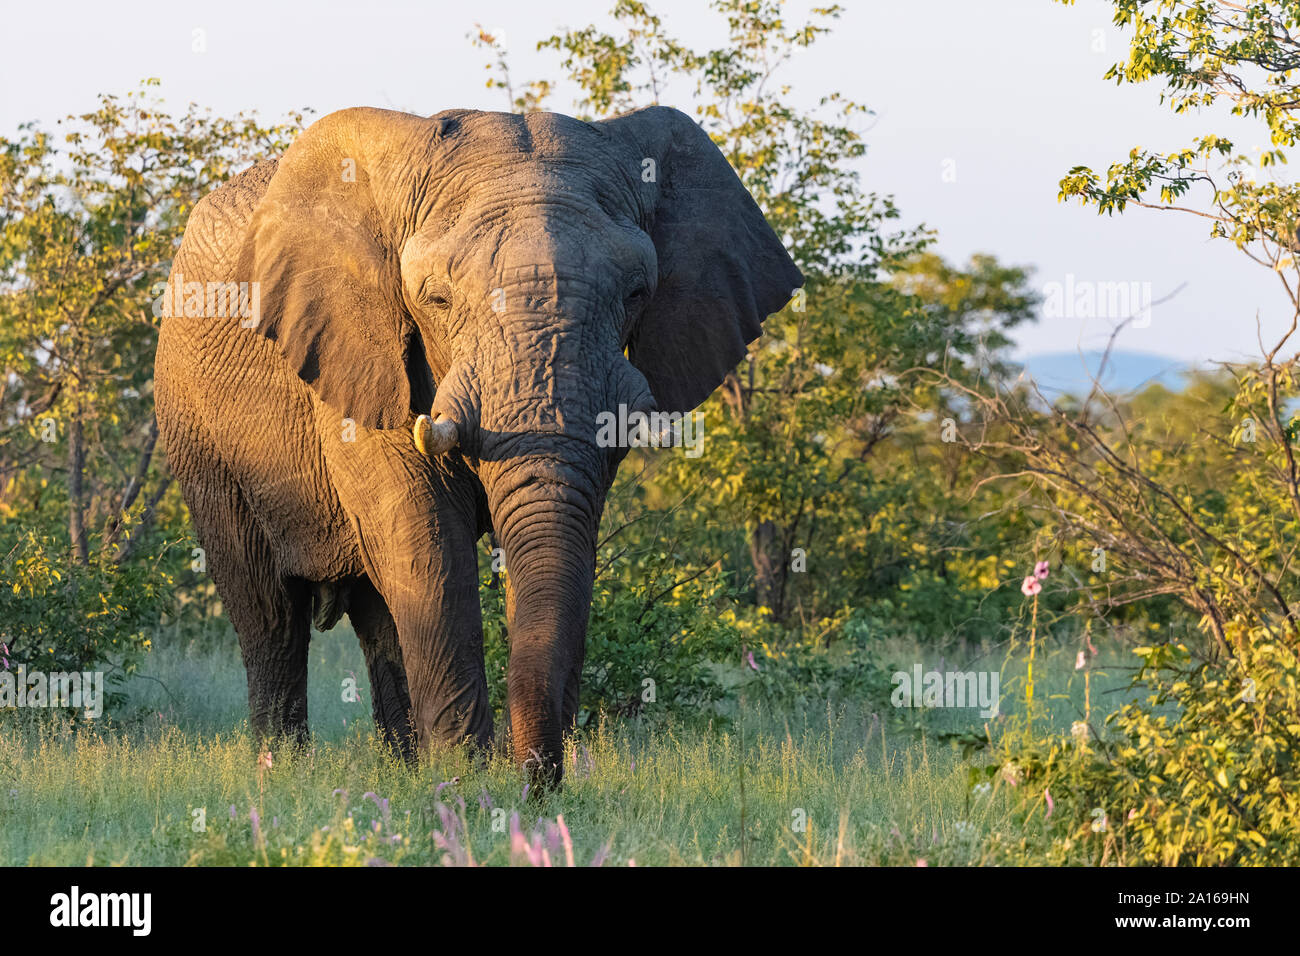 Namibia, Etosha National Park, African Elephant at sunset Stock Photo